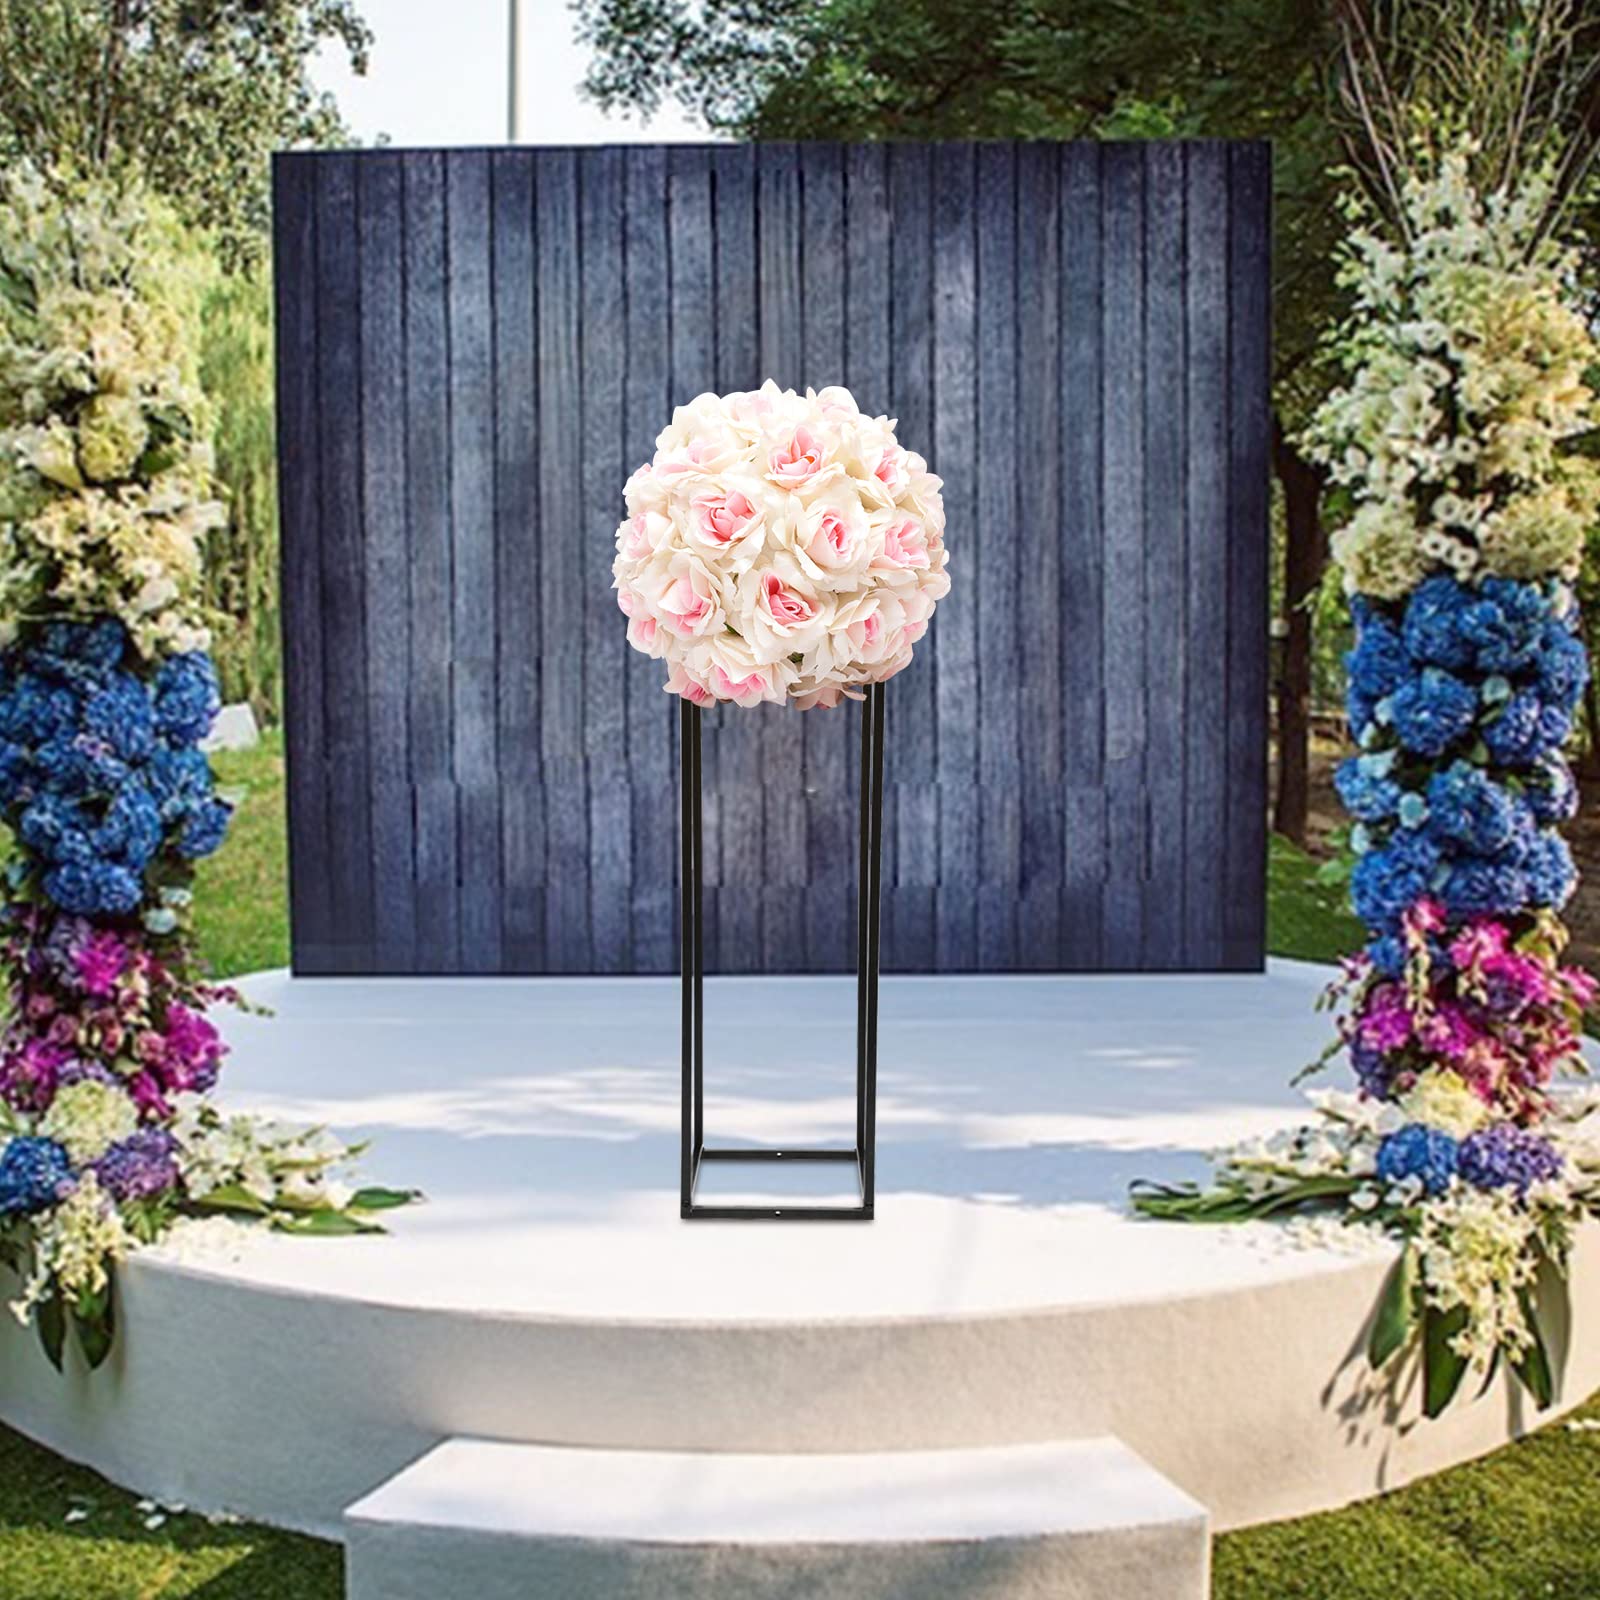 Elegante supporto per fiori in ferro nero 25x25x75 cm, portafiori per matrimoni con struttura in metallo vasi decorativi